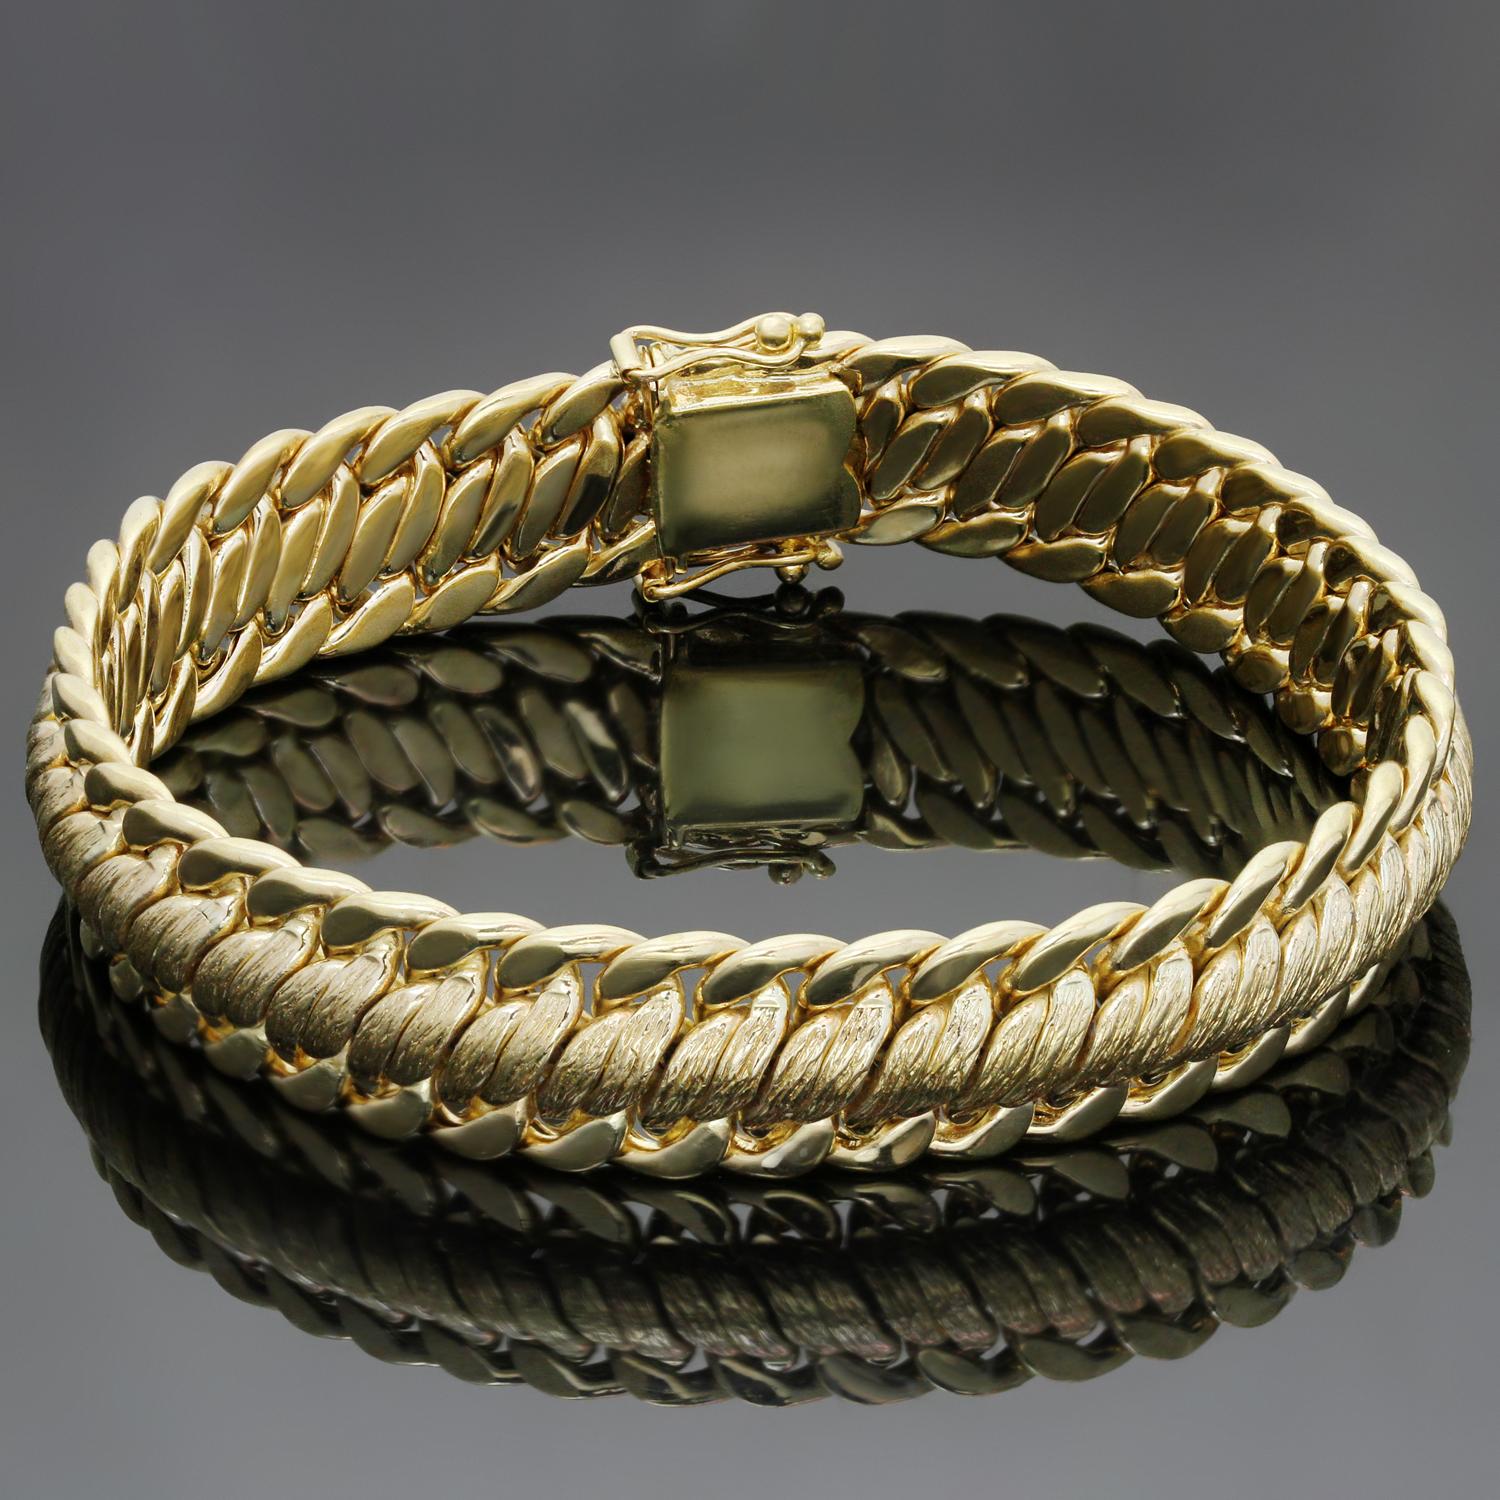 Dieses klassische Armband im Vintage-Stil zeichnet sich durch ein elegantes, geflochtenes Gliederdesign aus 18-karätigem Gelbgold mit mehreren Strukturen aus. Hergestellt in den Vereinigten Staaten in den 1970er Jahren. Abmessungen: 0,47